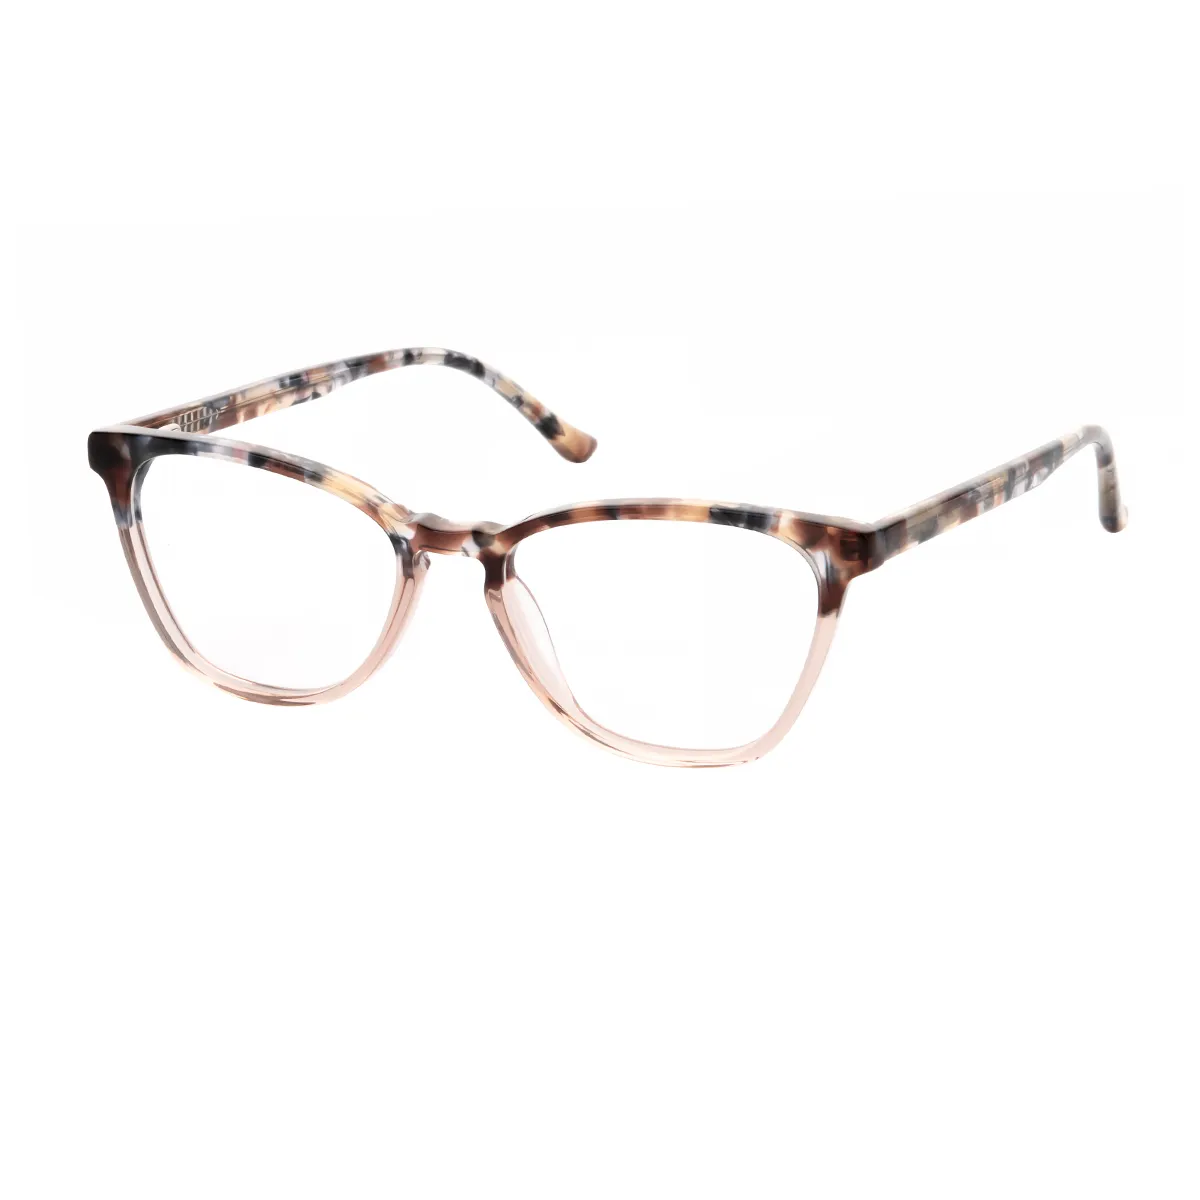 Benny - Cat-eye Brown-Tortoiseshell Glasses for Women - EFE